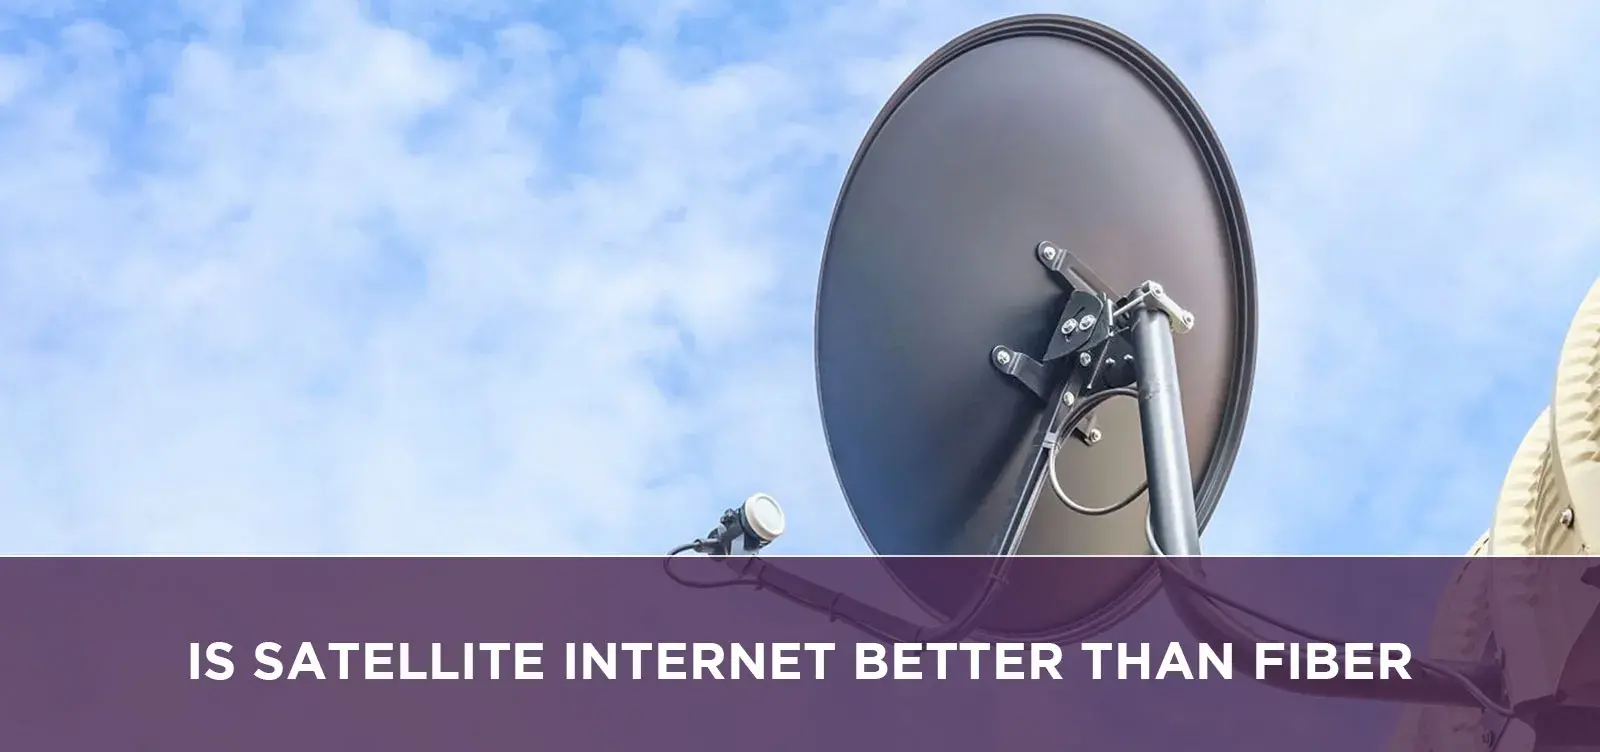 Is Satellite Internet Better Than Fiber?